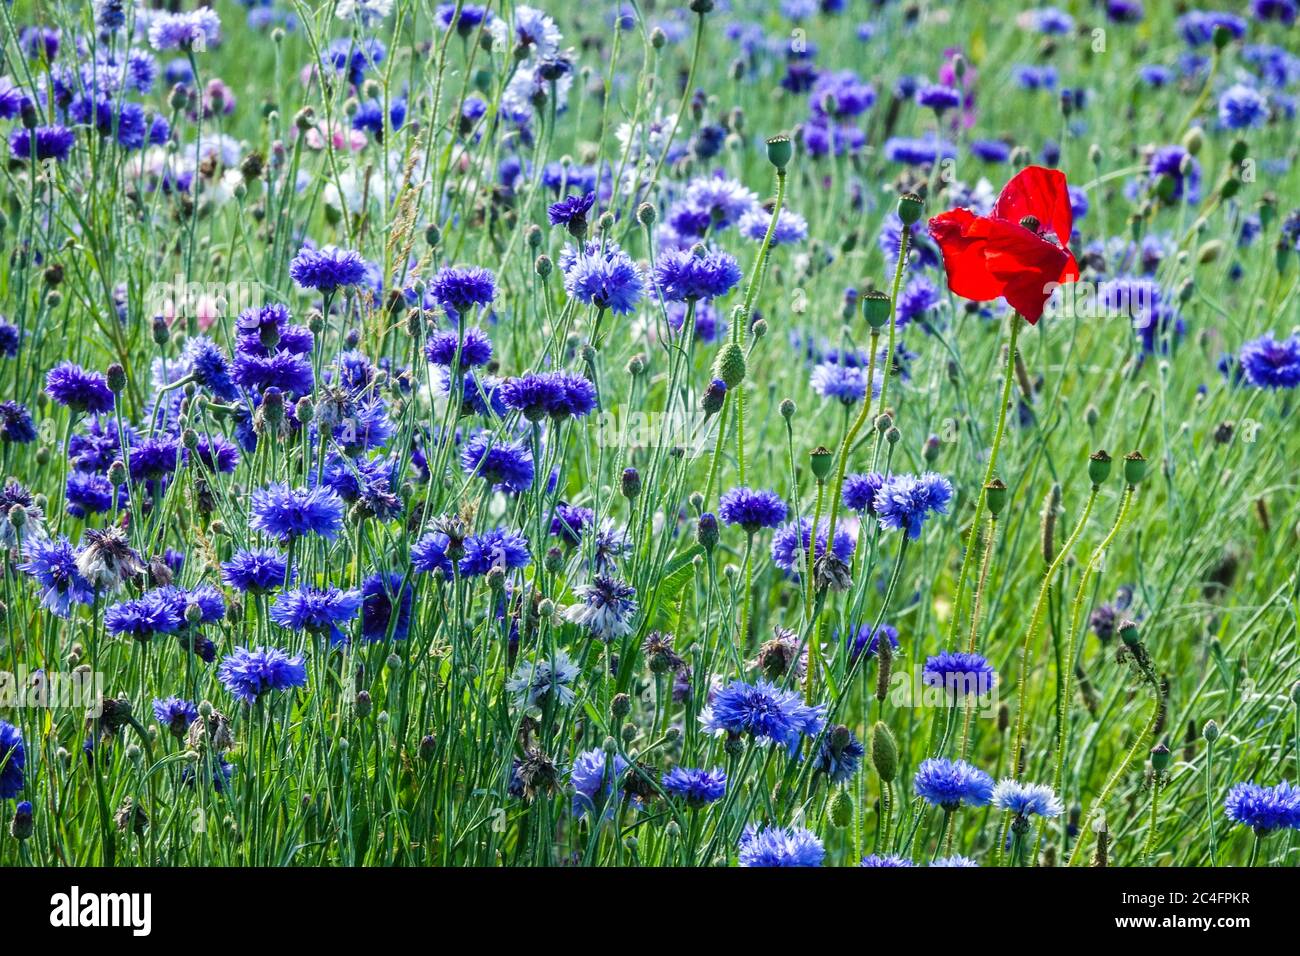 Red Blue Red Wildflower meadow Flowers Centaurea Poppy Papaver rhoeas Single in Blue Bachelors Buttons Blooms Wildflowers Meadow Cornflowers June Stock Photo